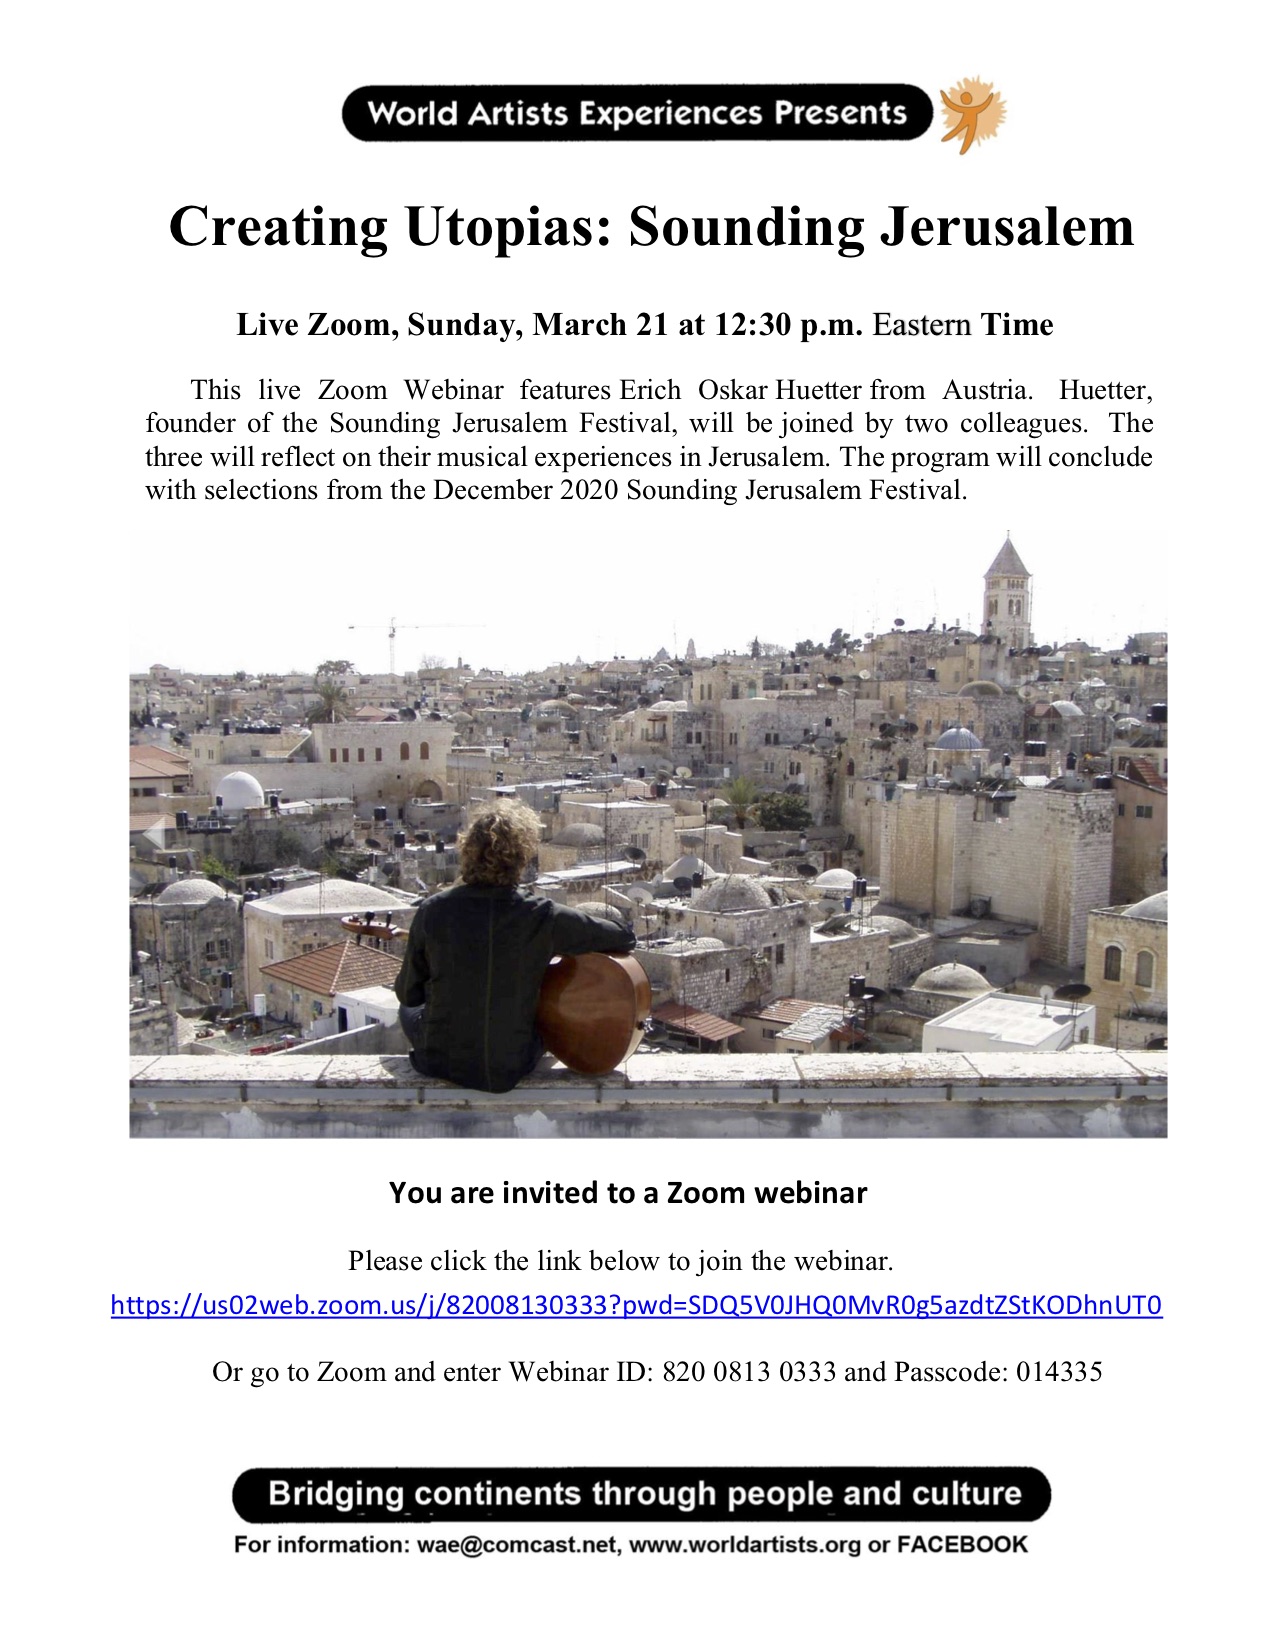 Sounding Jerusalem flyer